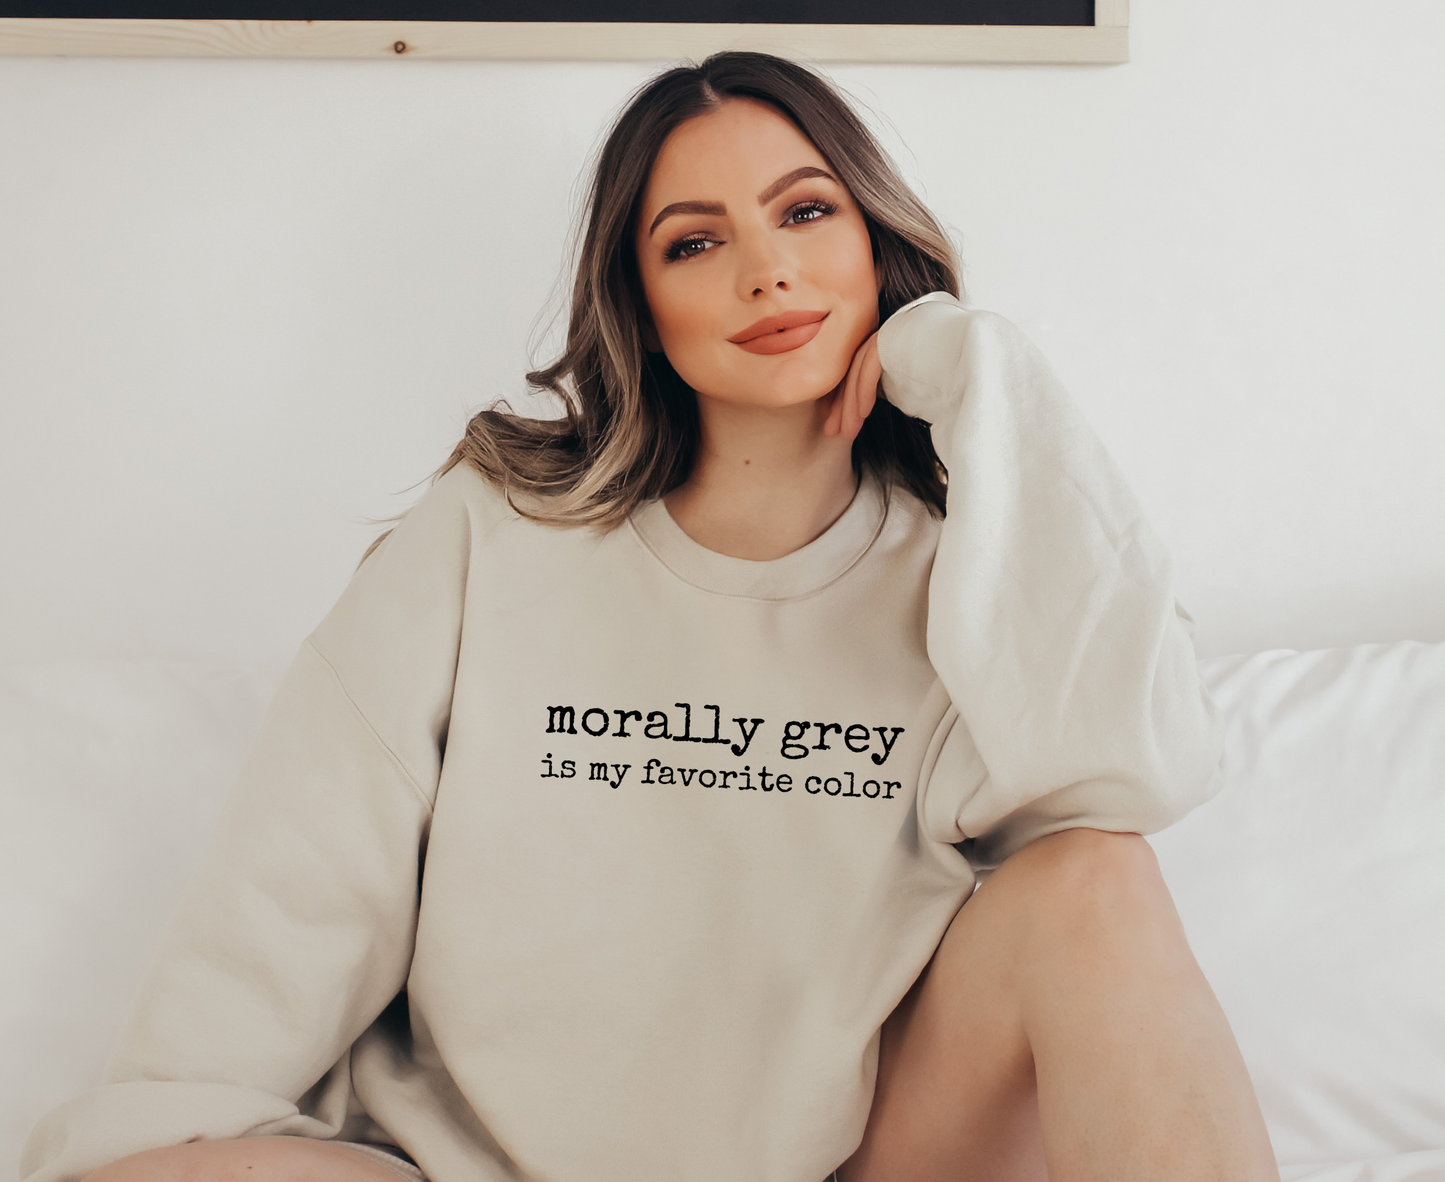 Morally Grey Is My Favorite Color Sweatshirt